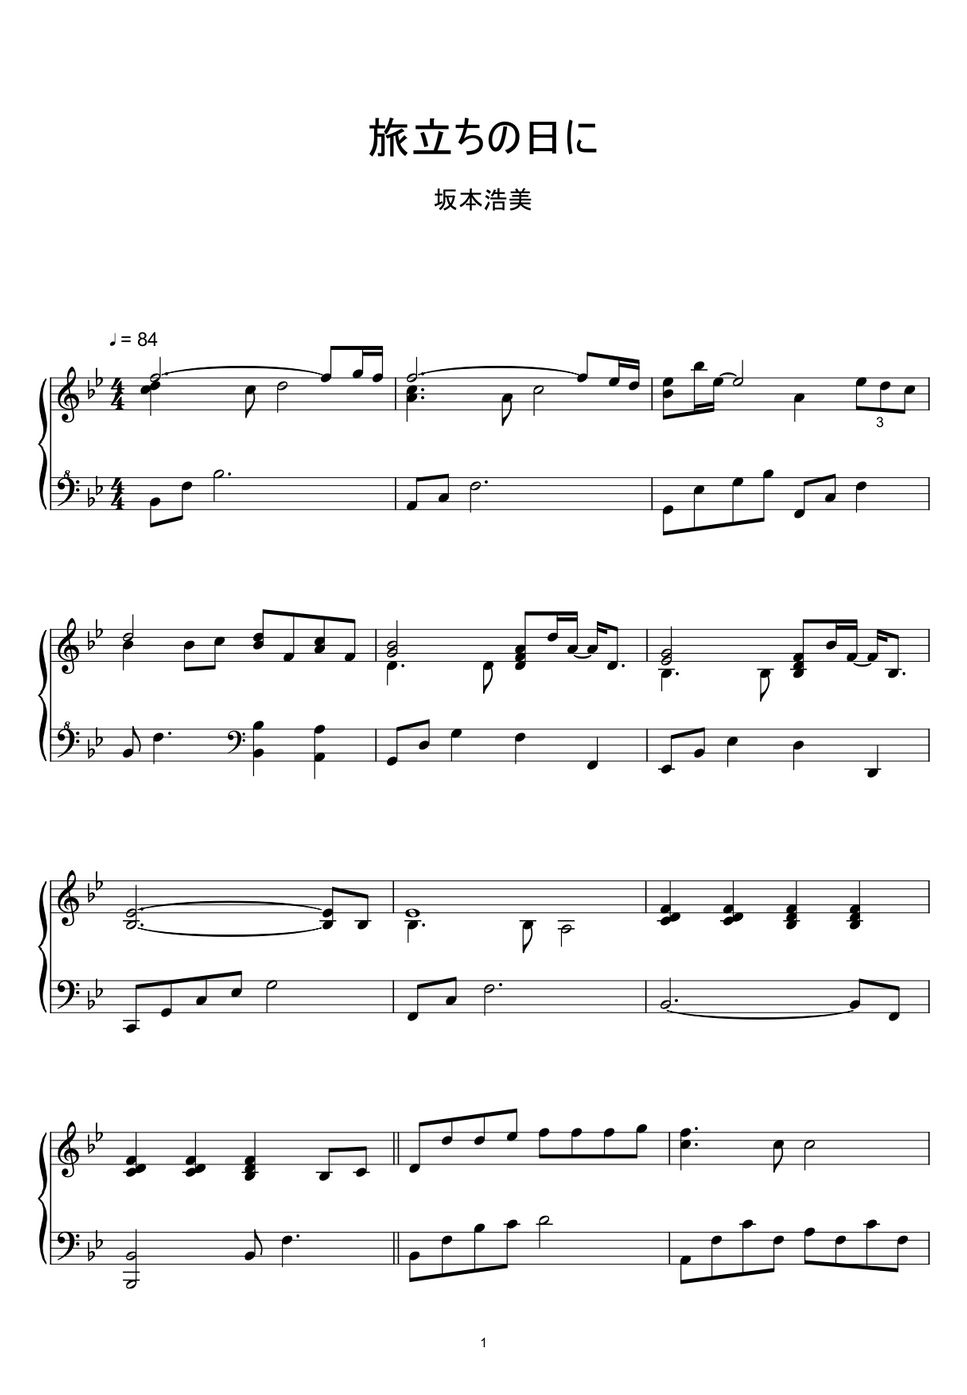 高橋浩美 - 卒業ソングの定番 「旅立ちの日に」 (楽譜, MIDI,) by sayu